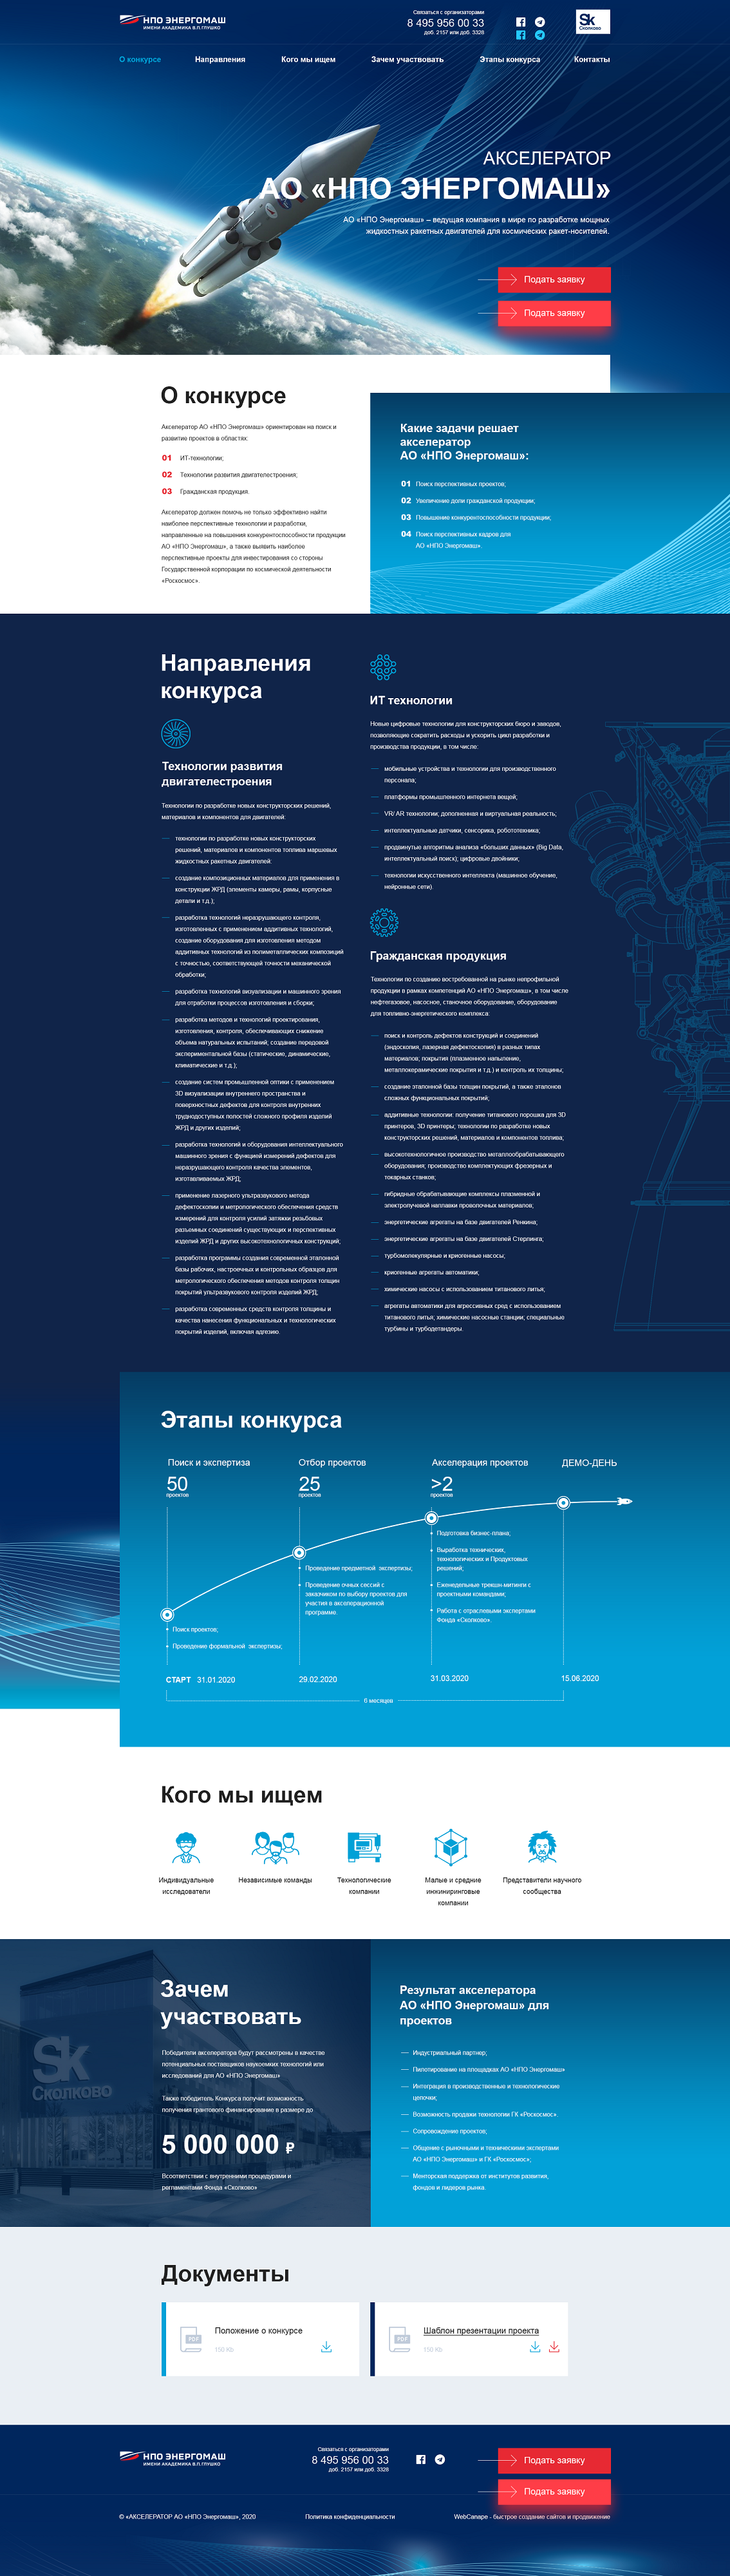 Создание landing page для акселератора Роскосмоса и НПО Энергомаш